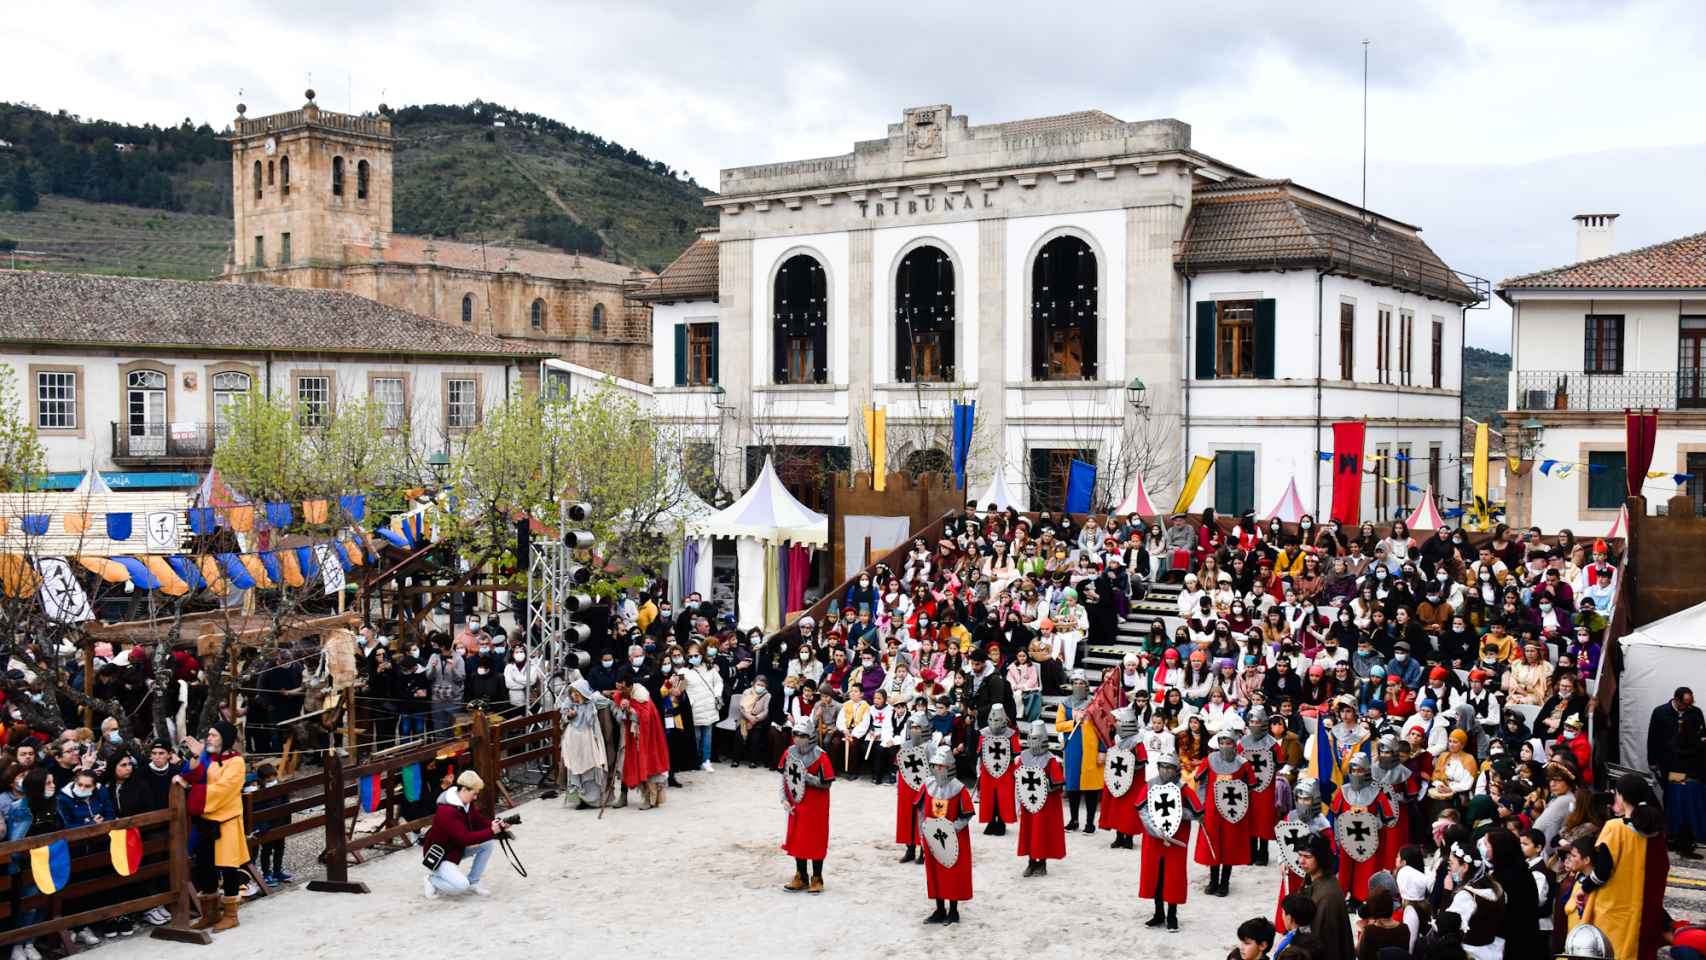 Imágenes de la Feria Medieval de Torre de Moncorvo 2022